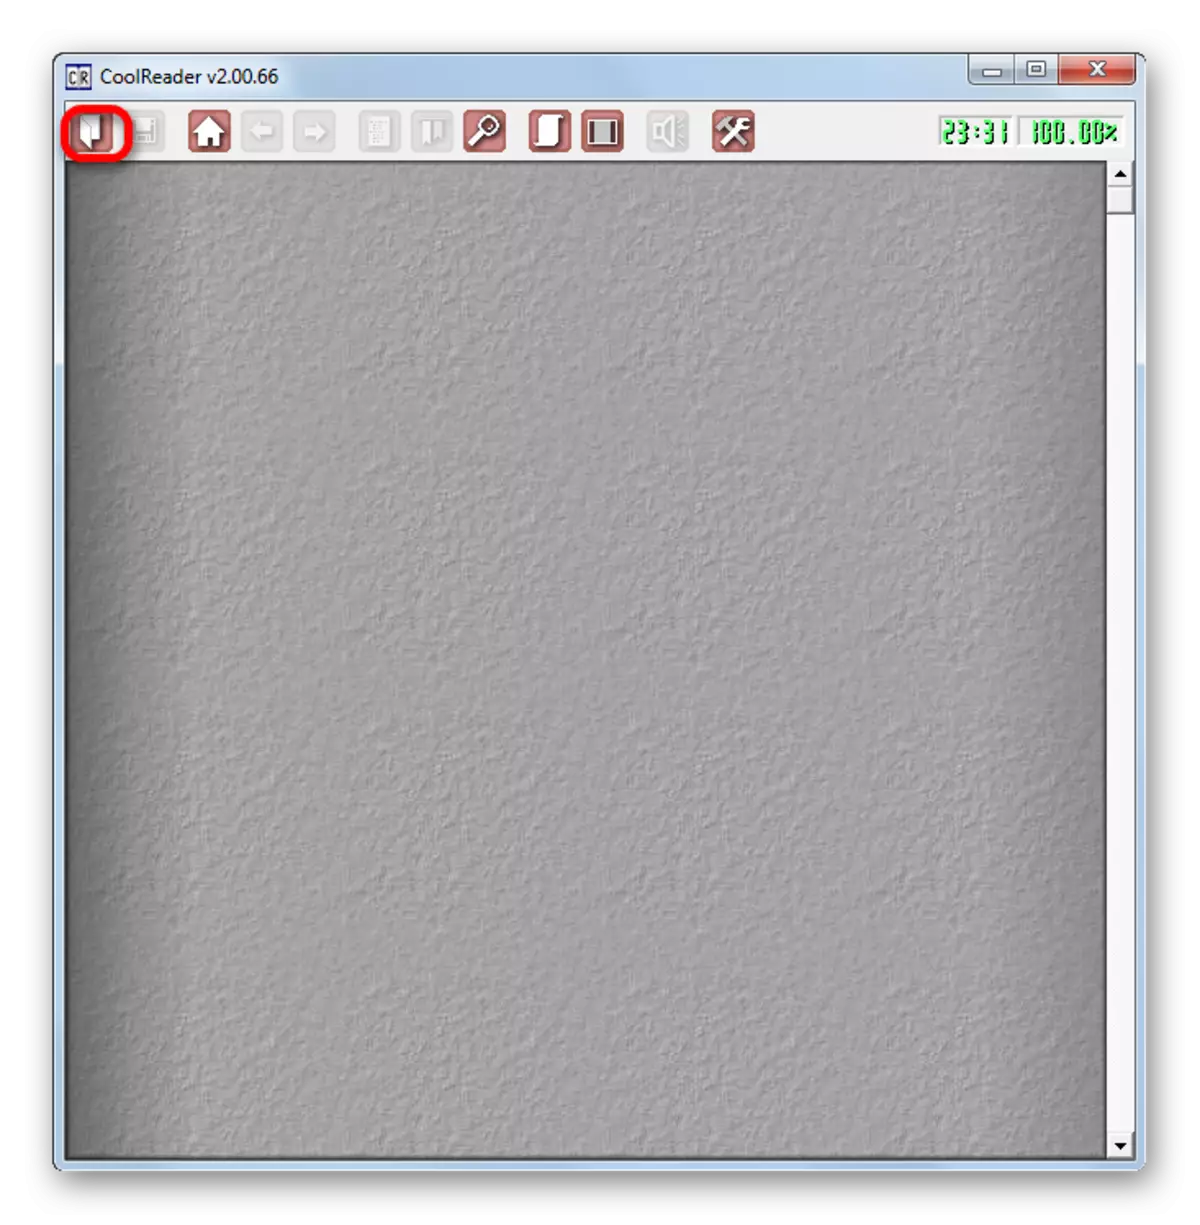 Pergi ke jendela pembukaan jendela melalui menu horizontal di program coolreader